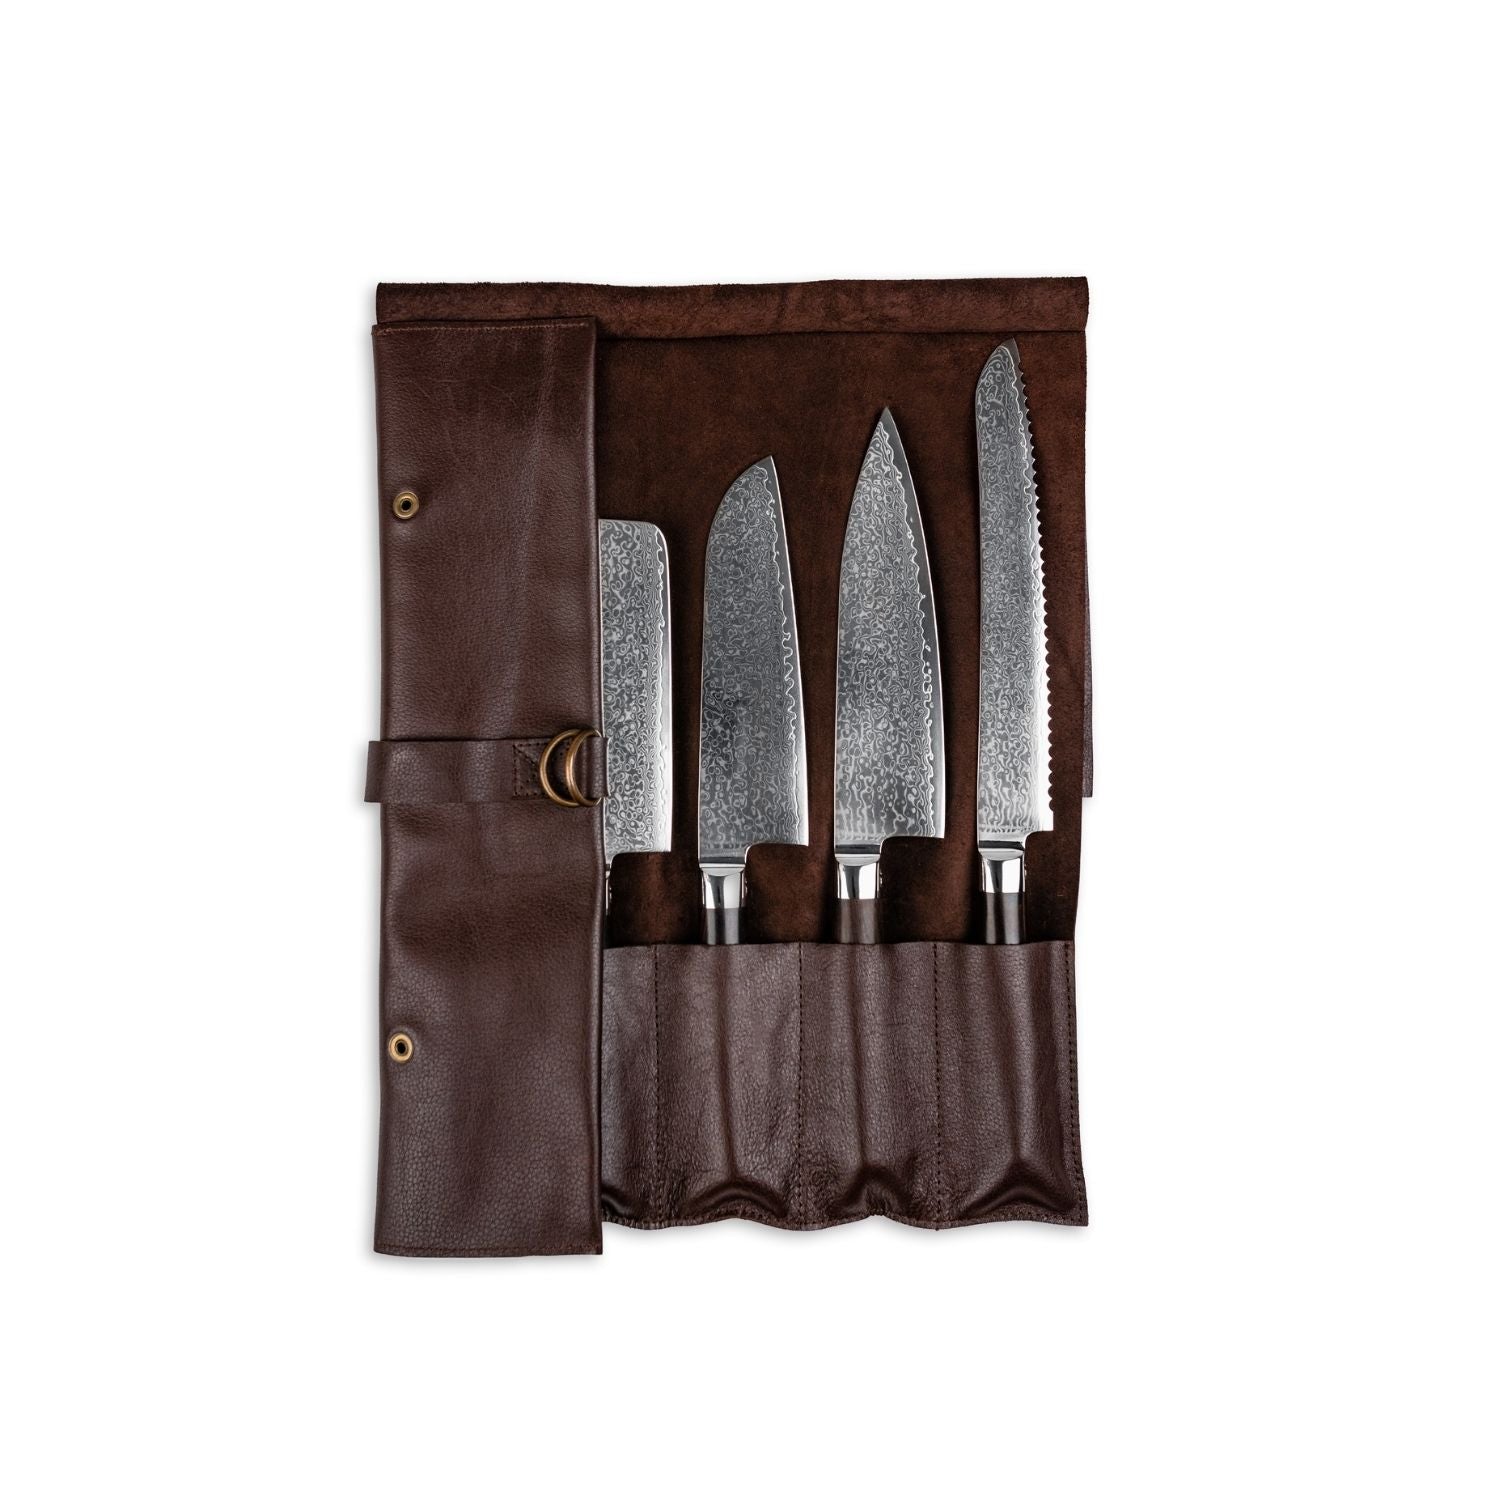 Knivmappe i læder med plads til 5 knive